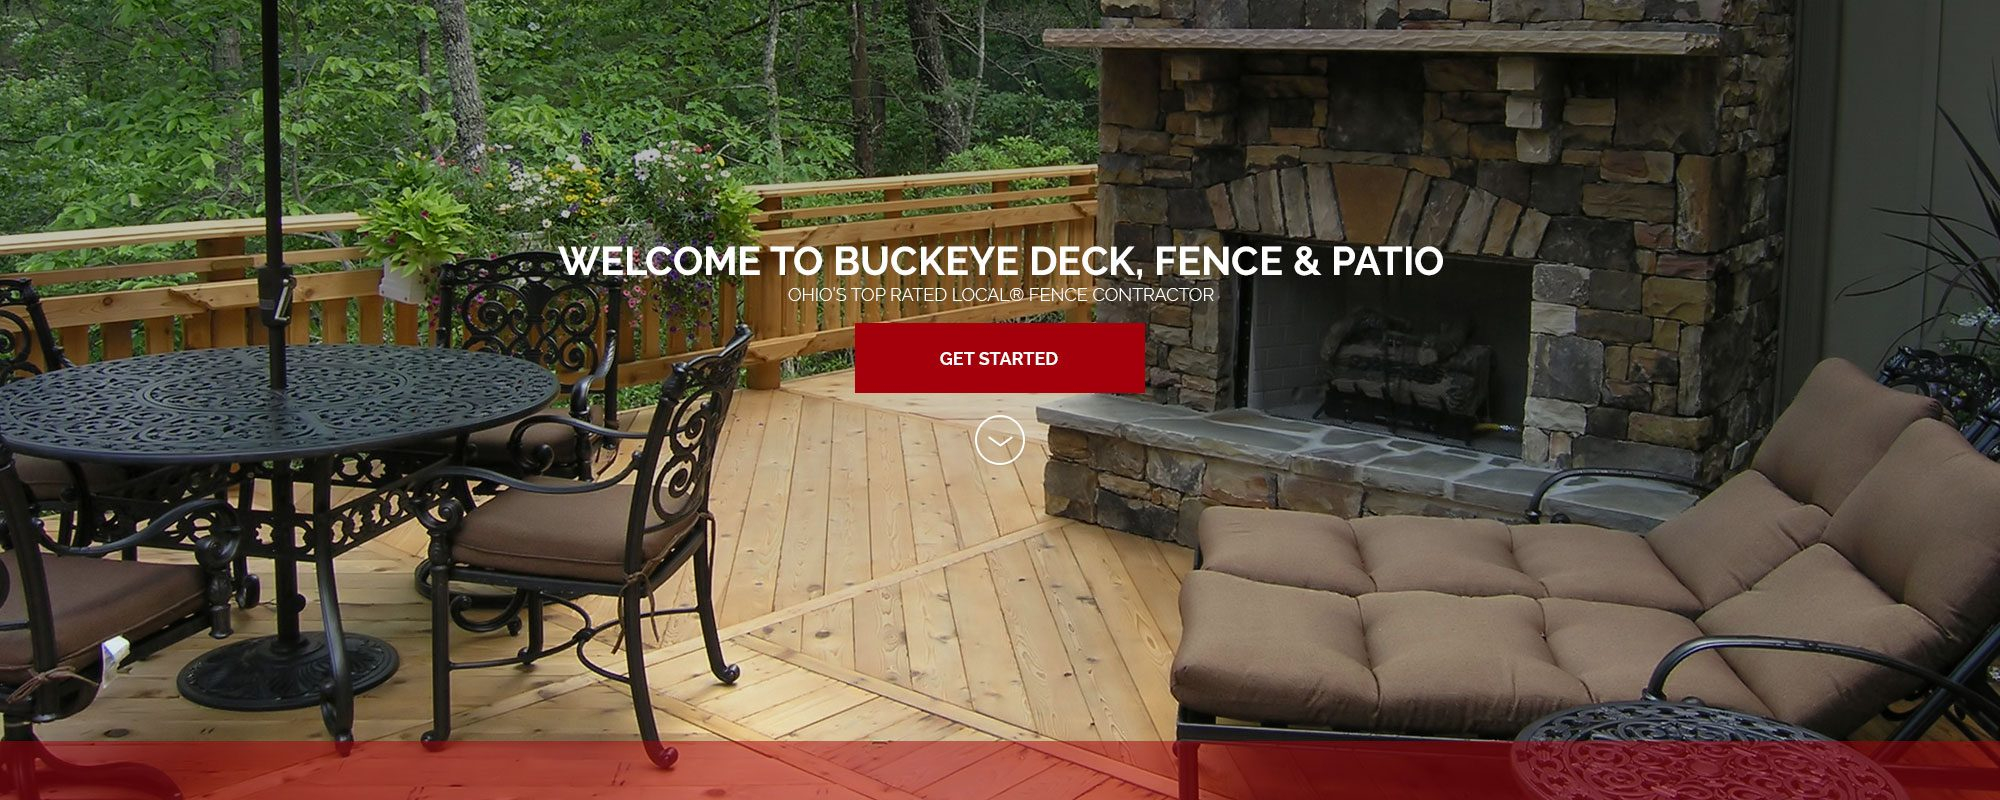 Welcome To Buckeye Buckeye Deck Fence Patio inside sizing 2000 X 800